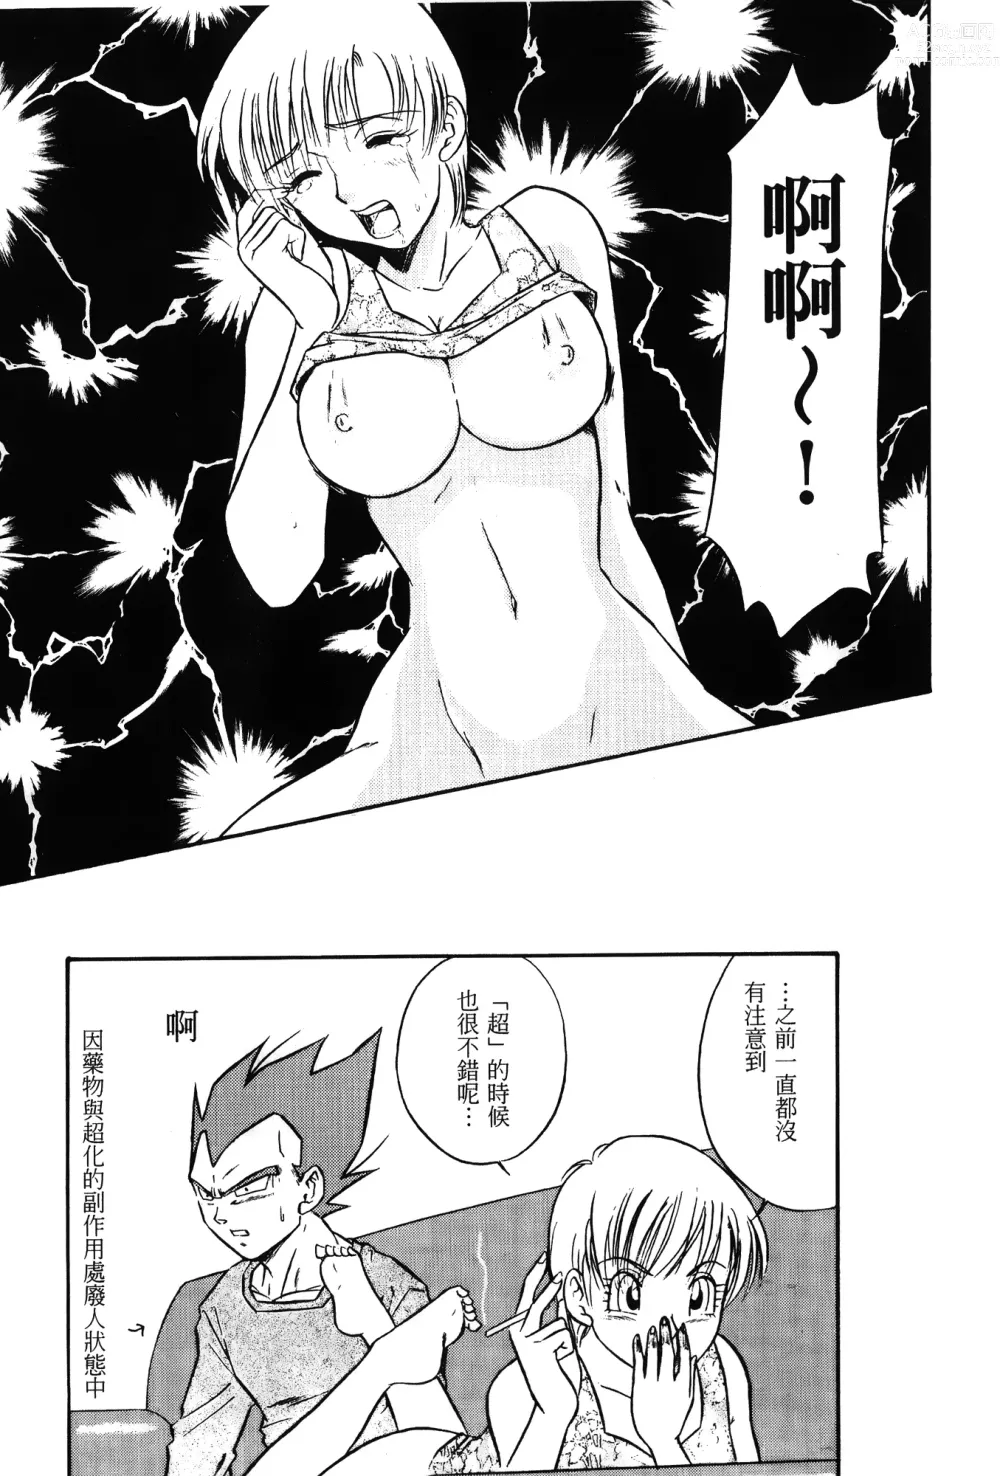 Page 30 of doujinshi ドラゴンパール 01